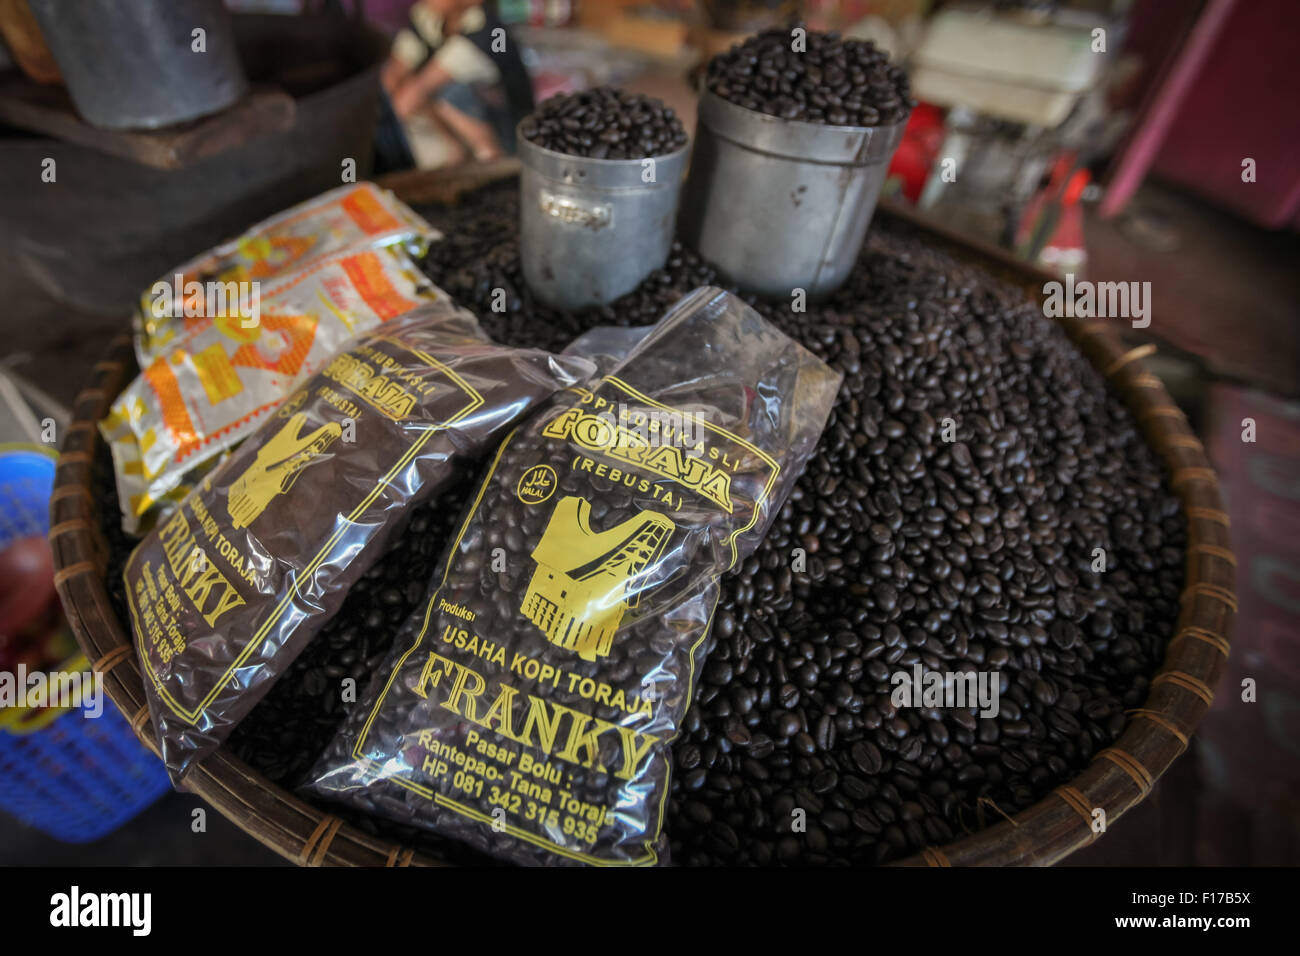 Spécimen de café arabica d'origine unique de Toraja qui est transformé, torréfié, étiqueté et commercialisé par une entreprise communautaire à Toraja, en Indonésie. Banque D'Images